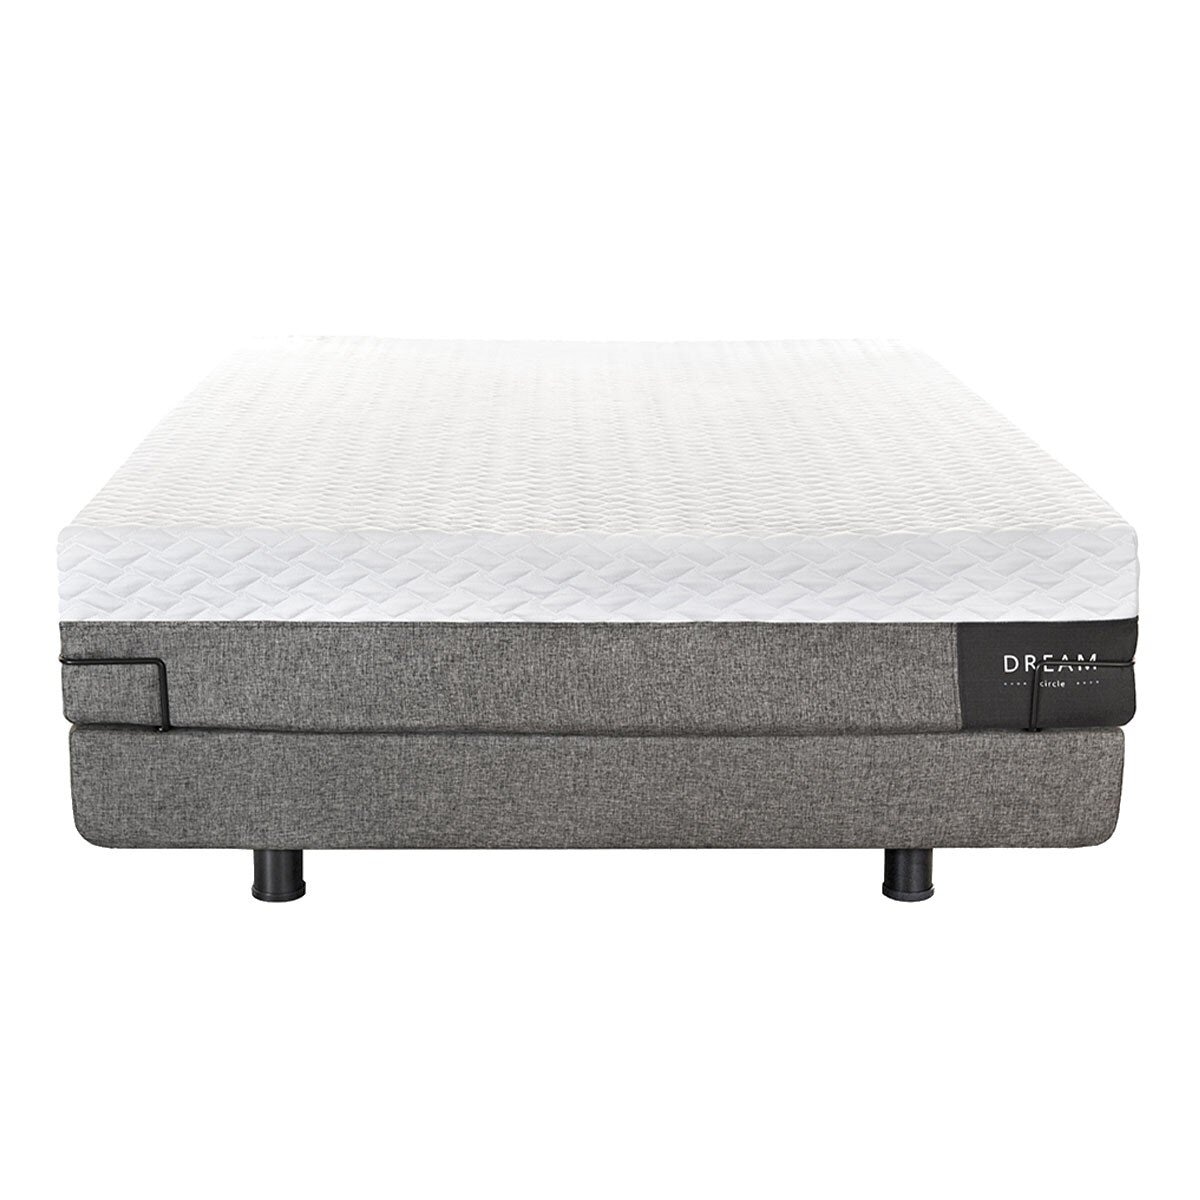 幻知曲 R450 標準雙人睡眠系統 贈保潔墊 150公分 X 200公分